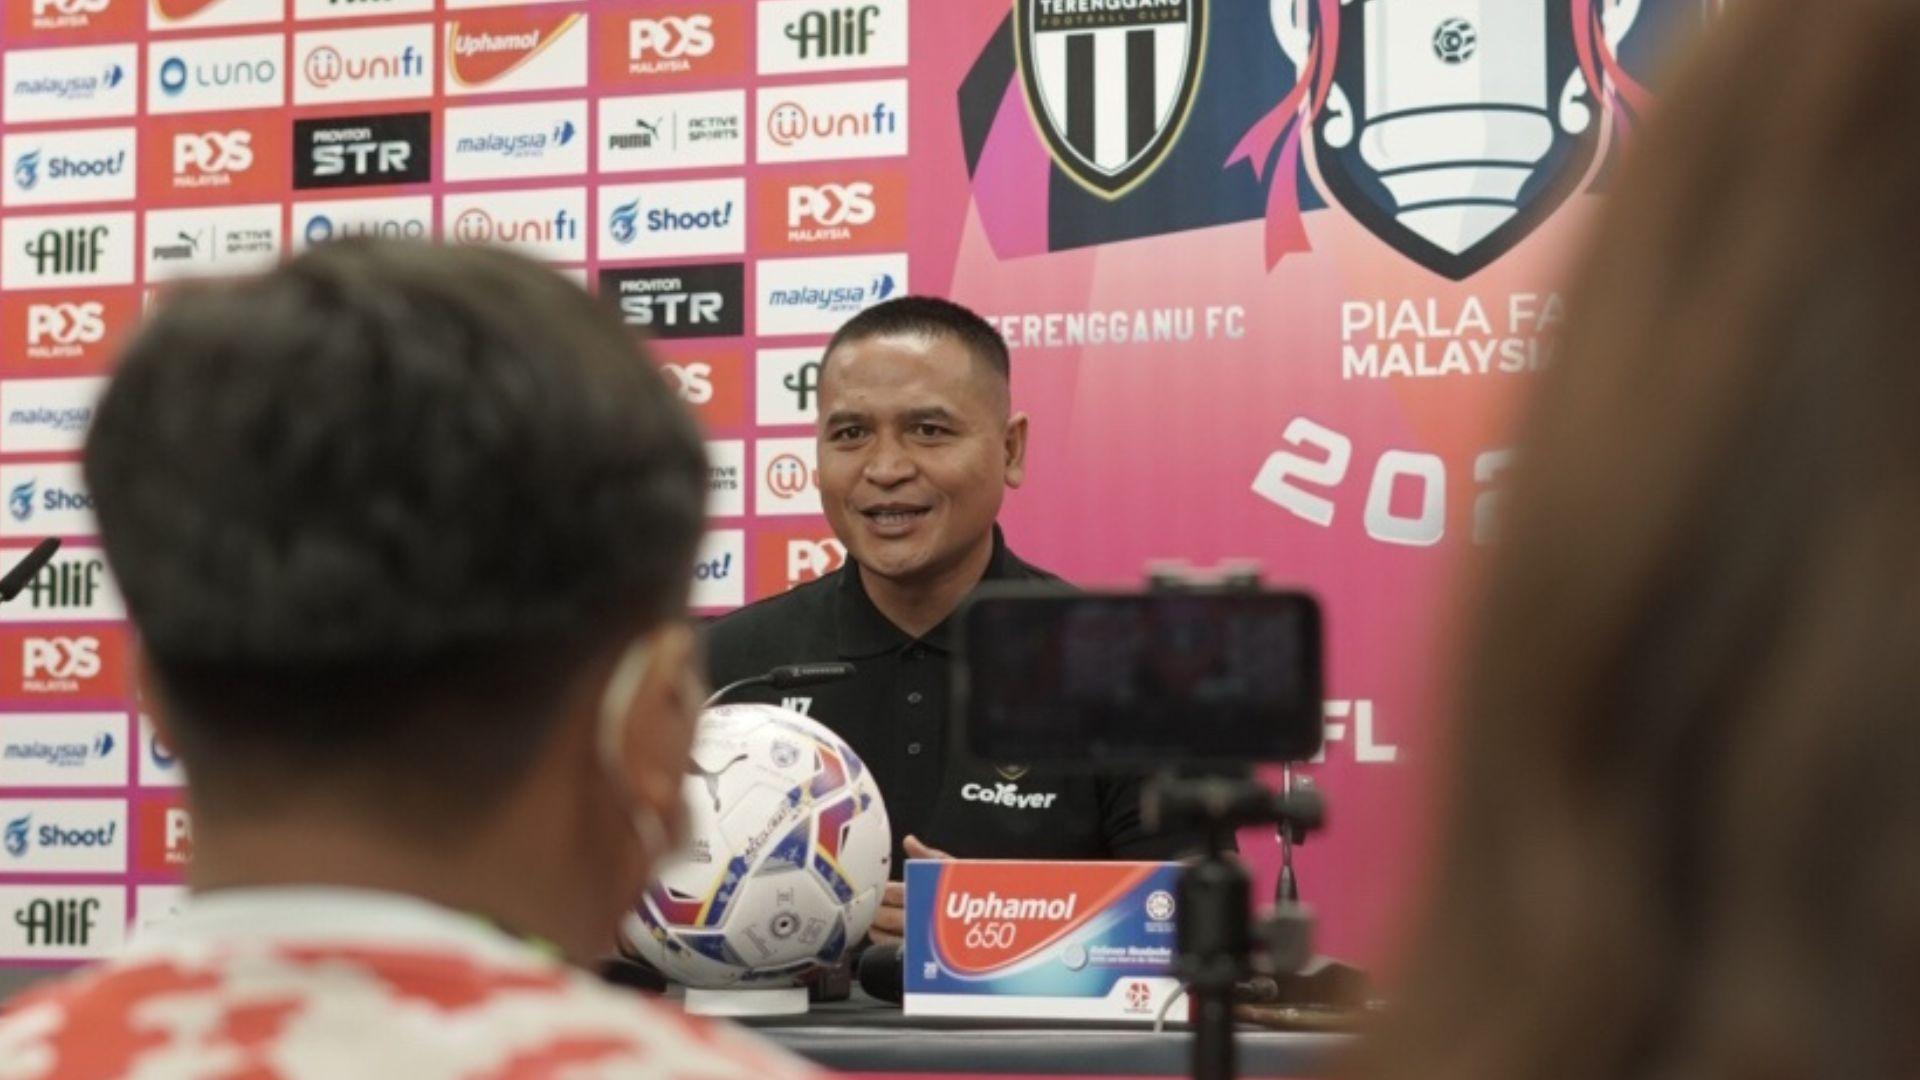 Nafuzi Terengganu 4 Nafuzi Zain: Terengganu Bermain Untuk Piala